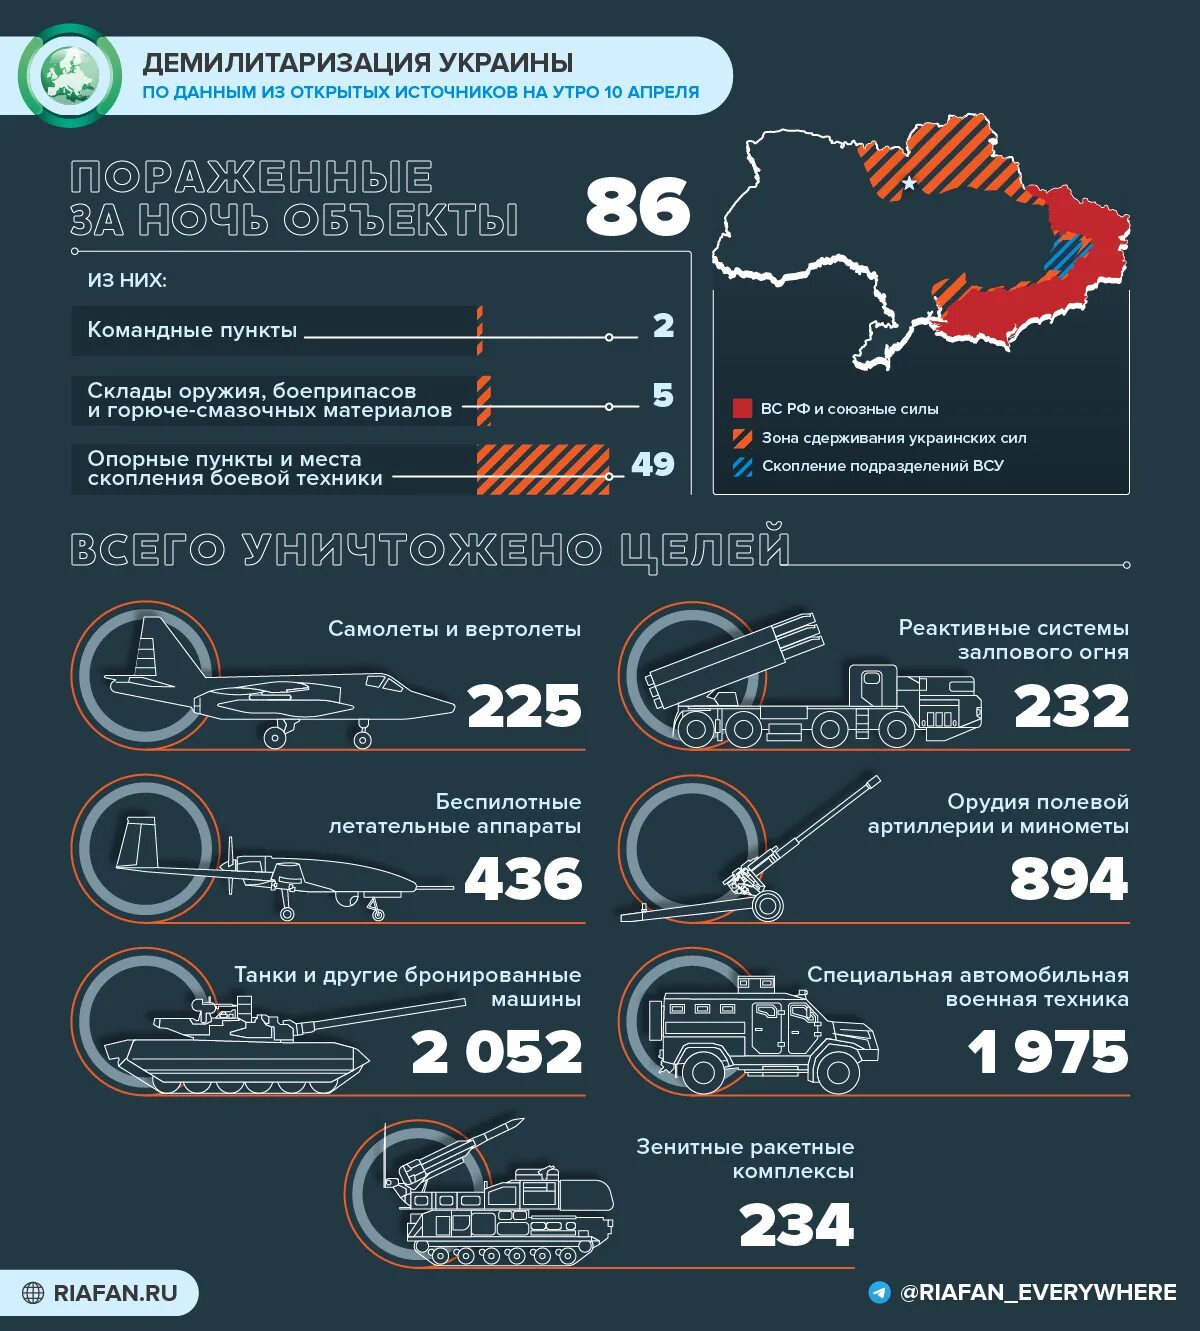 Министерство обороны рф данные. Поставки оружия на Украину инфографика. Потери Украины инфографика. Потери украинских войск 2022 инфографика.